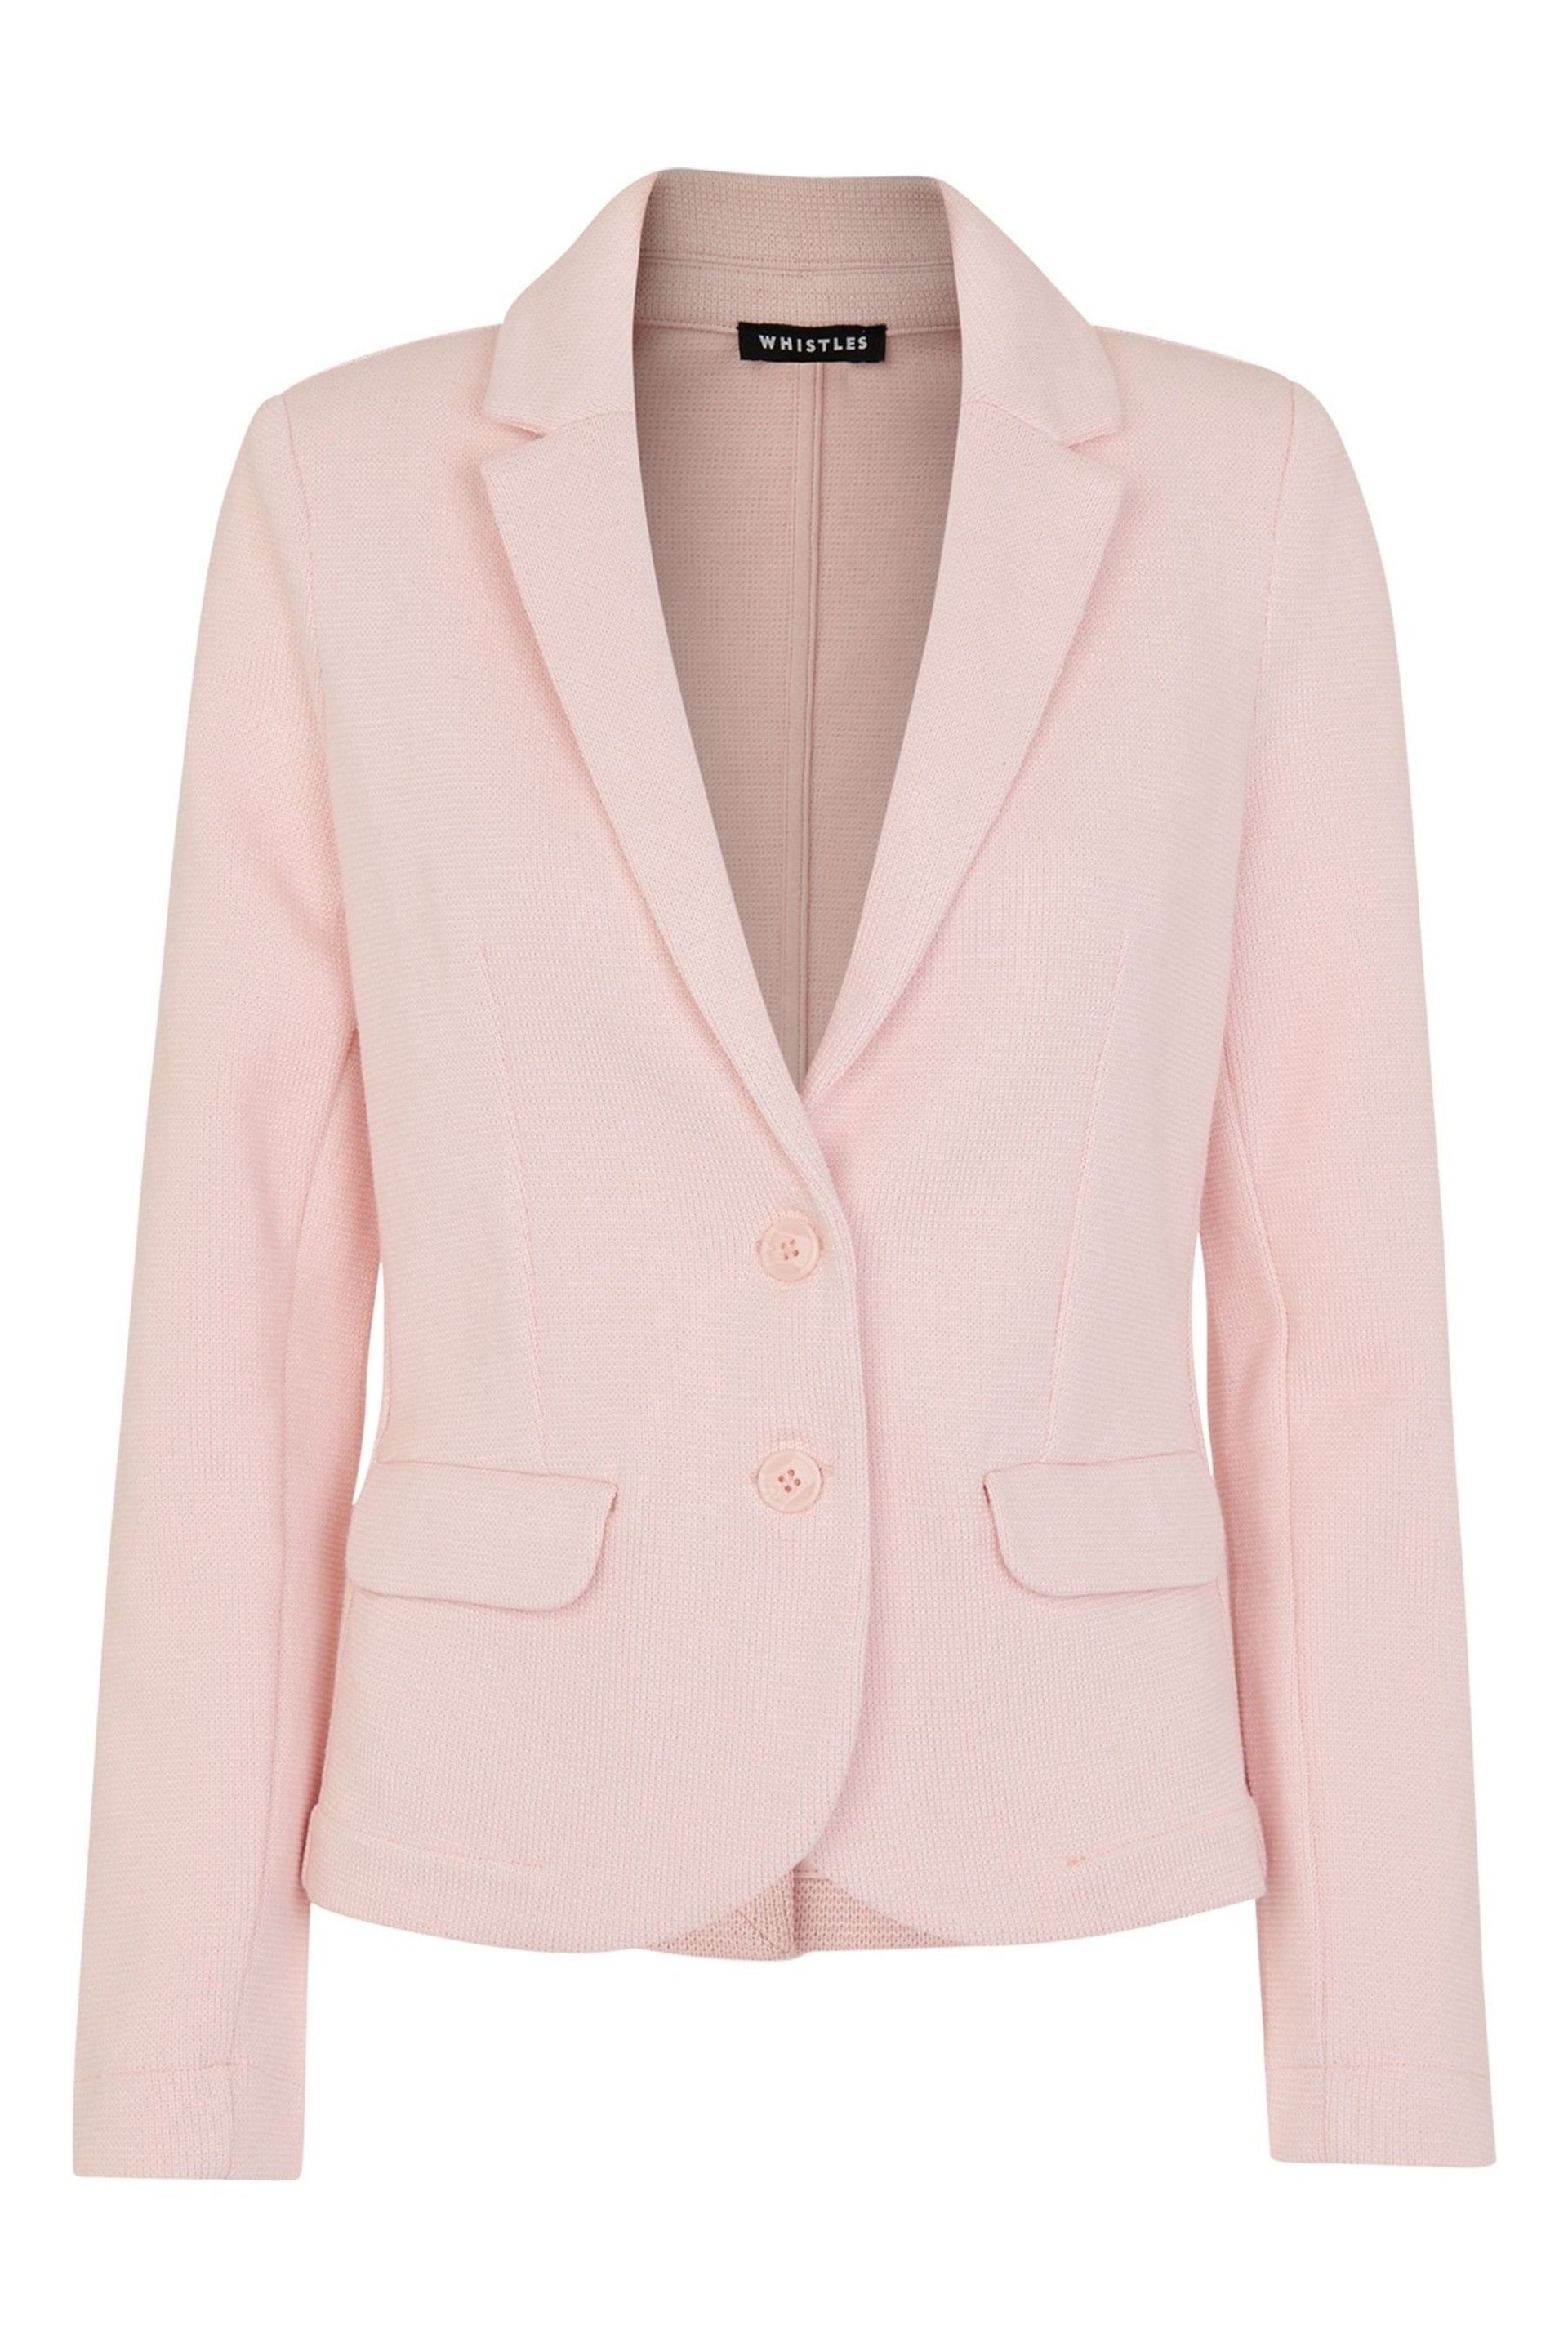 Whistles Pink Slim Jersey Jacket - Image 4 of 4